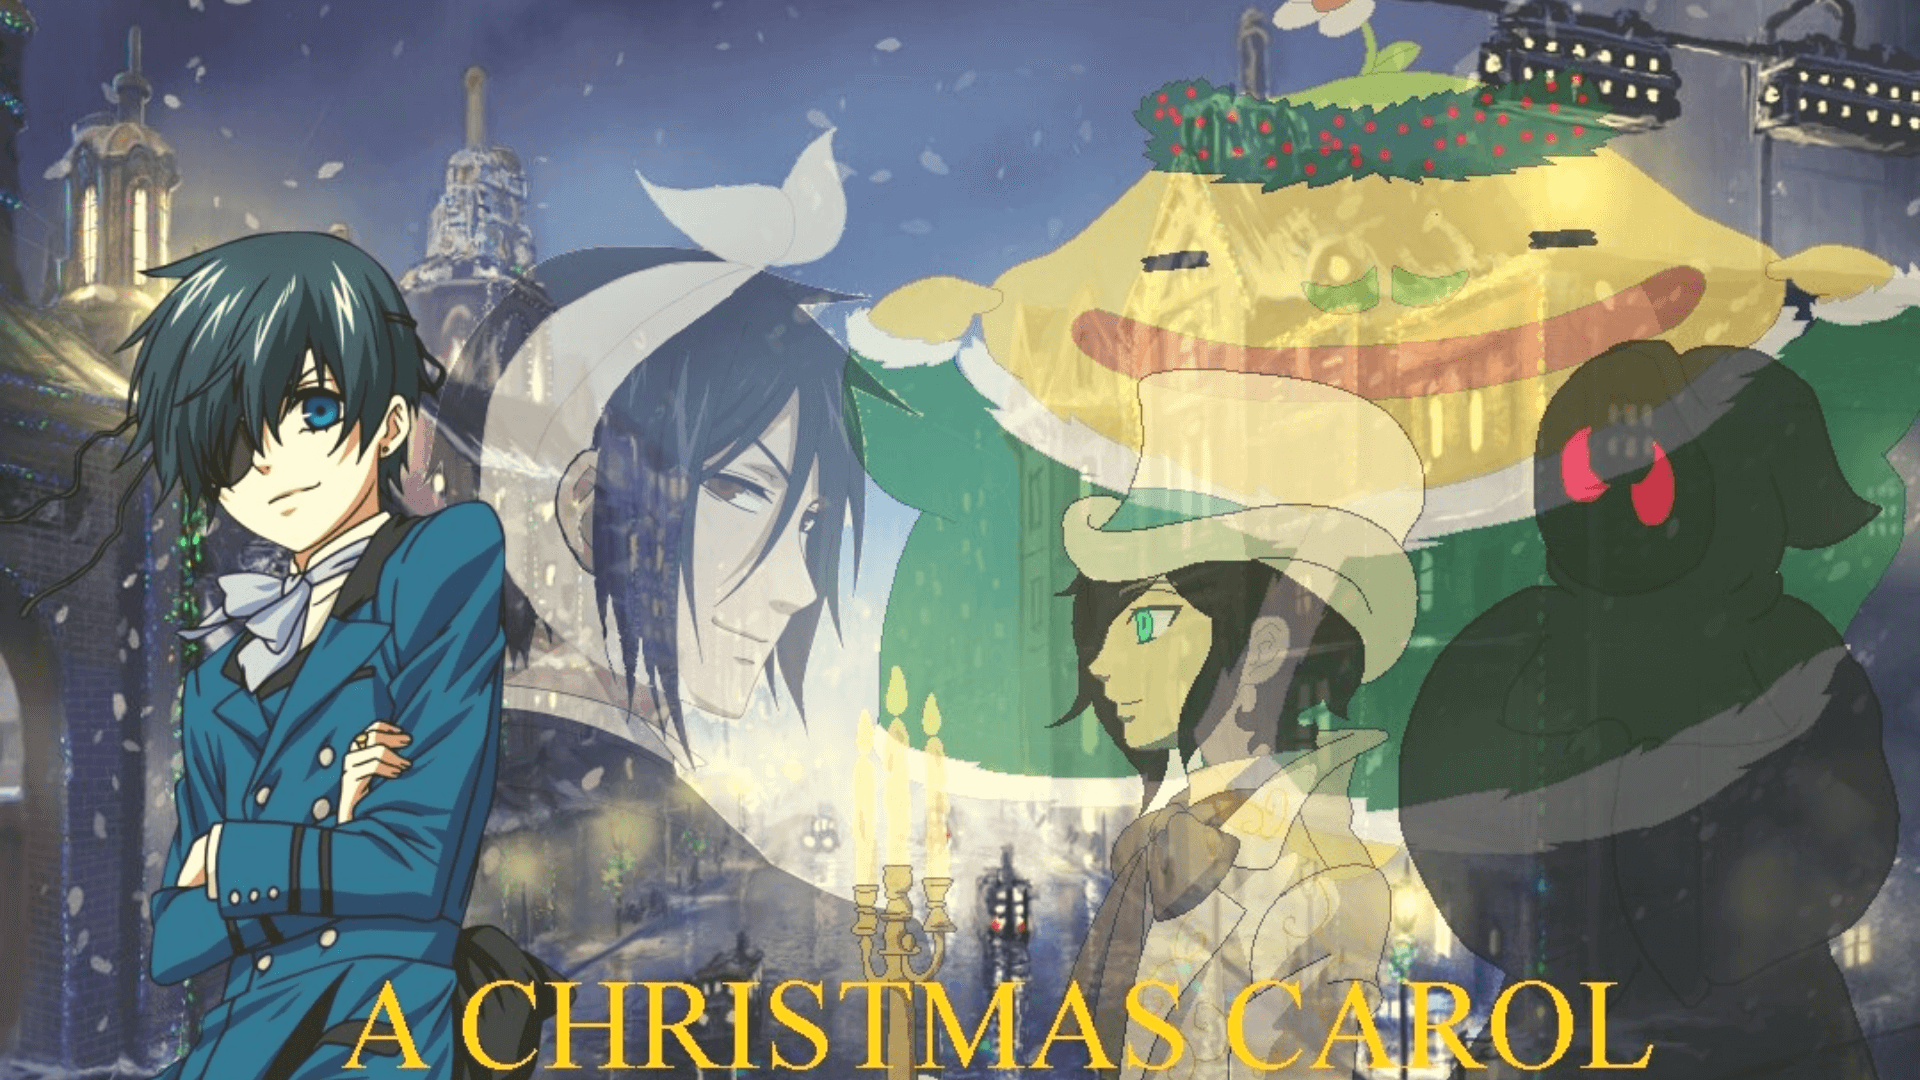 A Christmas Carol -The Top 10 Christmas Anime To Watch This Holiday Season